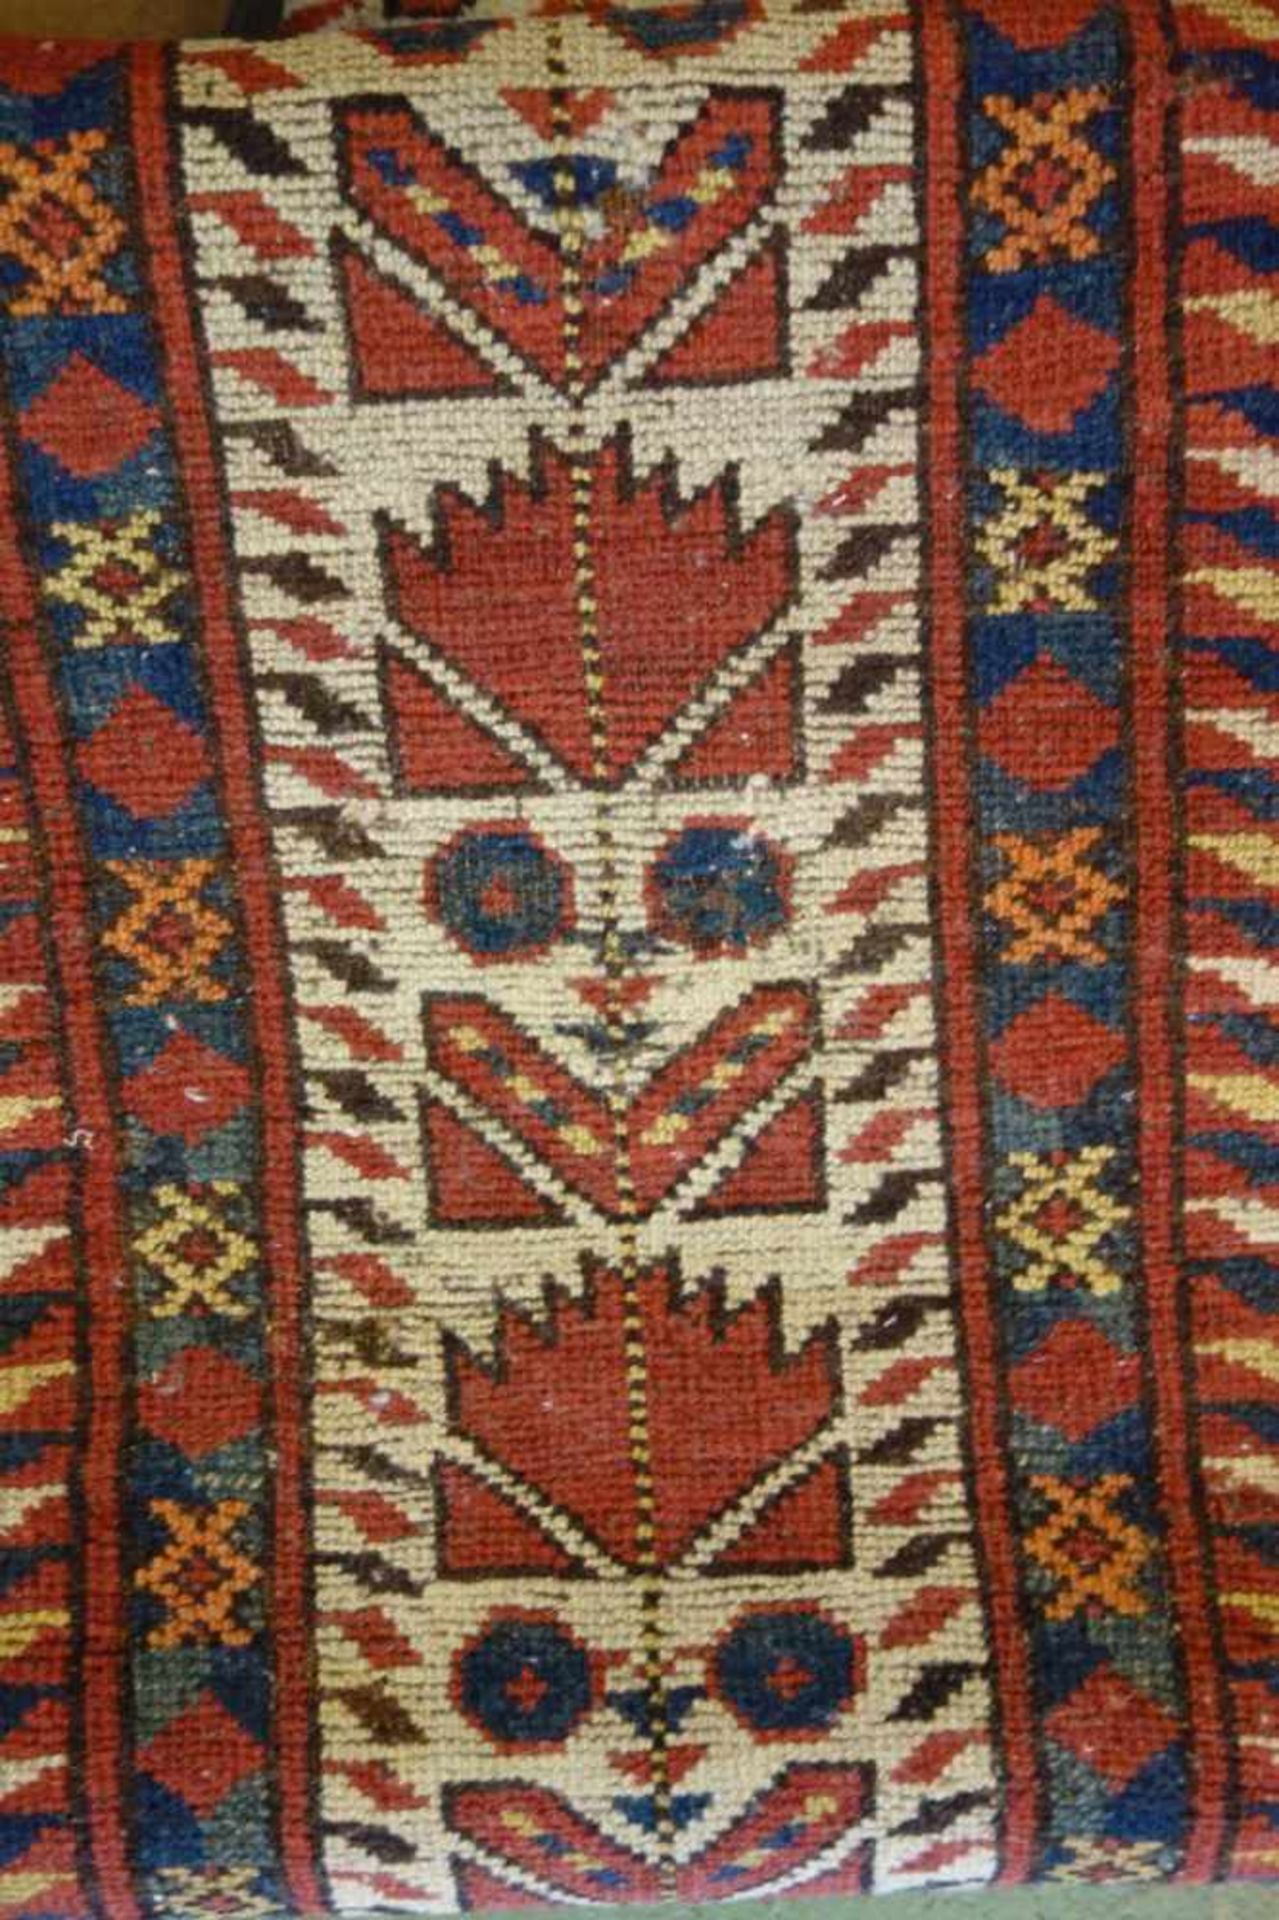 SCHMALER BESCHIR GEBETSTEPPICH / prayer rug, wohl 2. H. 19. Jh., Turkmenistan / Ersari-Beschir ( - Image 15 of 24